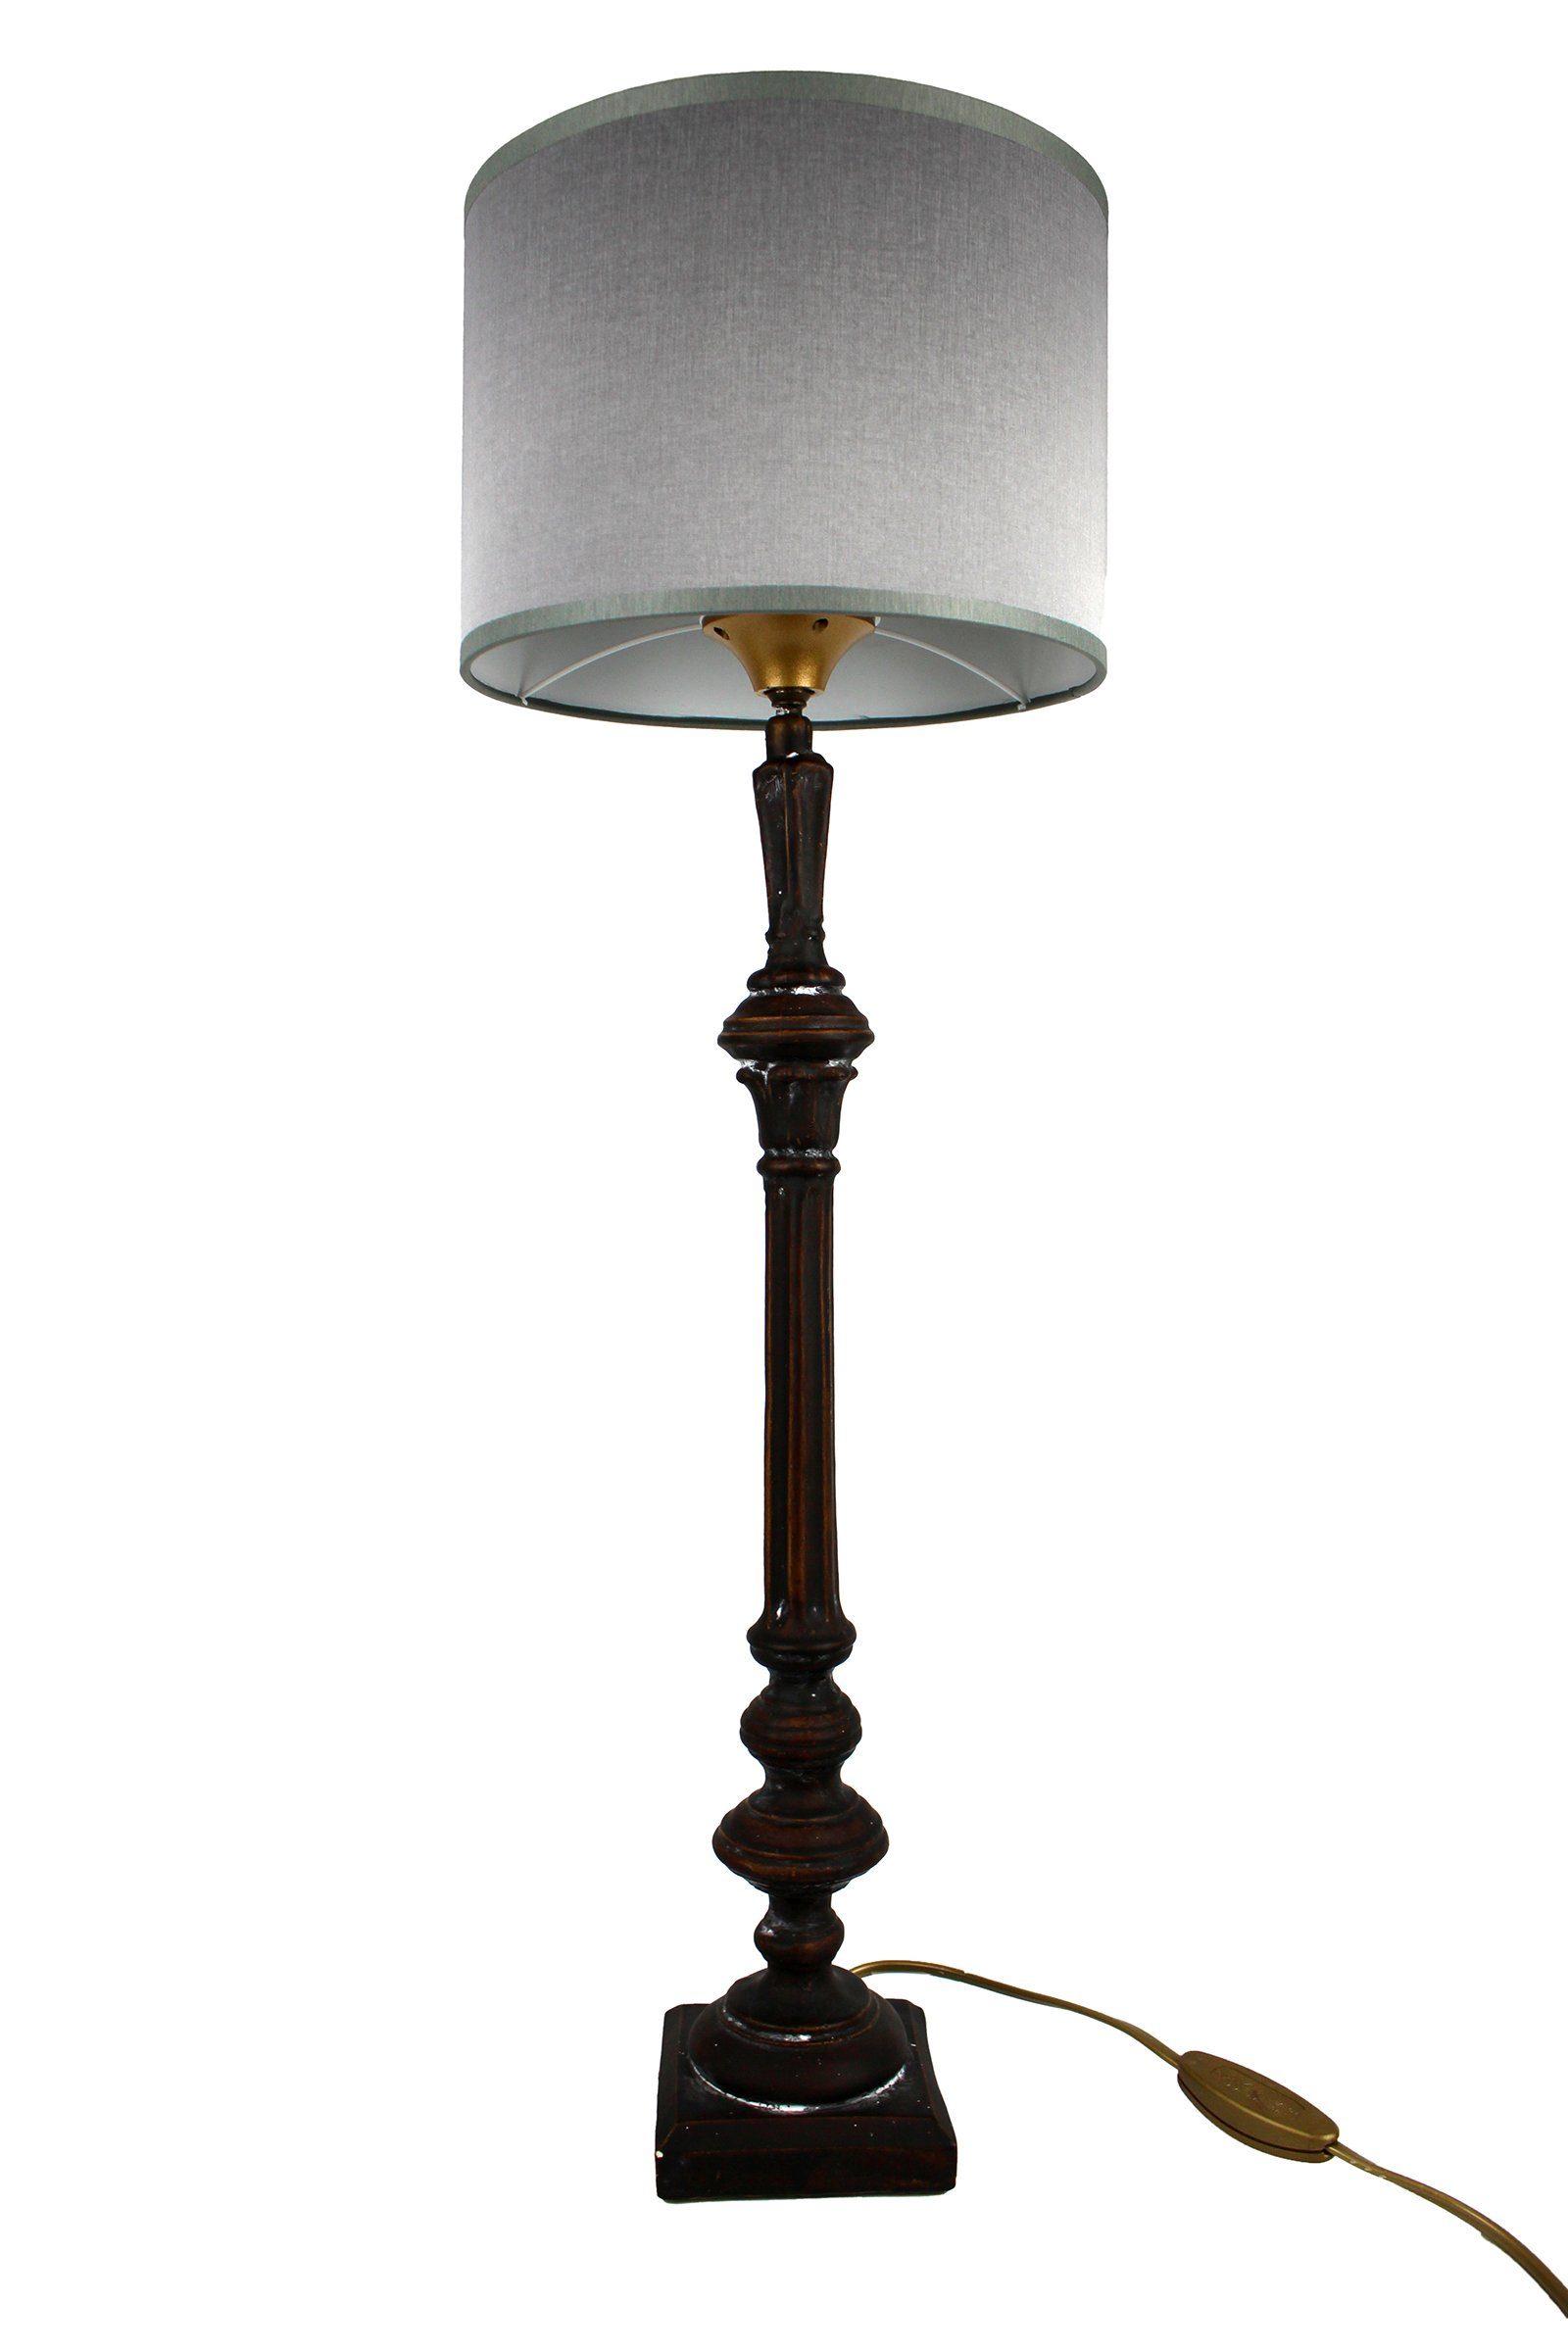 Signature Home Collection Tischleuchte Tischlampe schmal Holz gedrechselt lackiert mit Lampenschirm, ohne Leuchtmittel, warmweiß, handgefertigt in Italien schwarz - grau